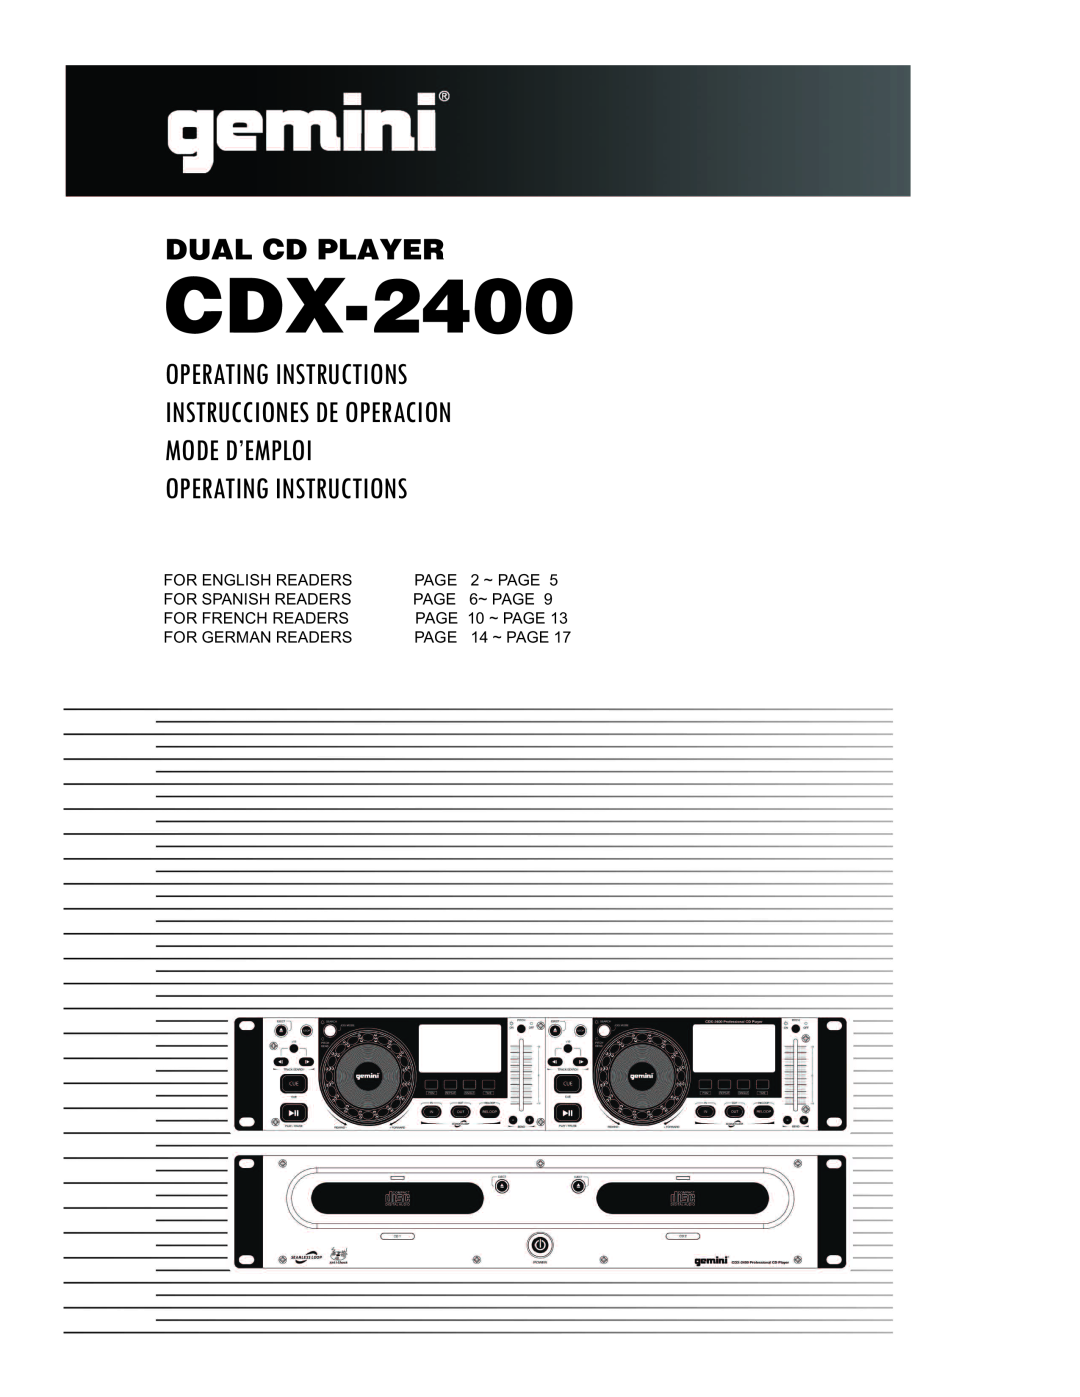 Gemini CDX 2400 manual Dual Cd Player, CDX-2400, Operating Instructions Instrucciones De Operacion 